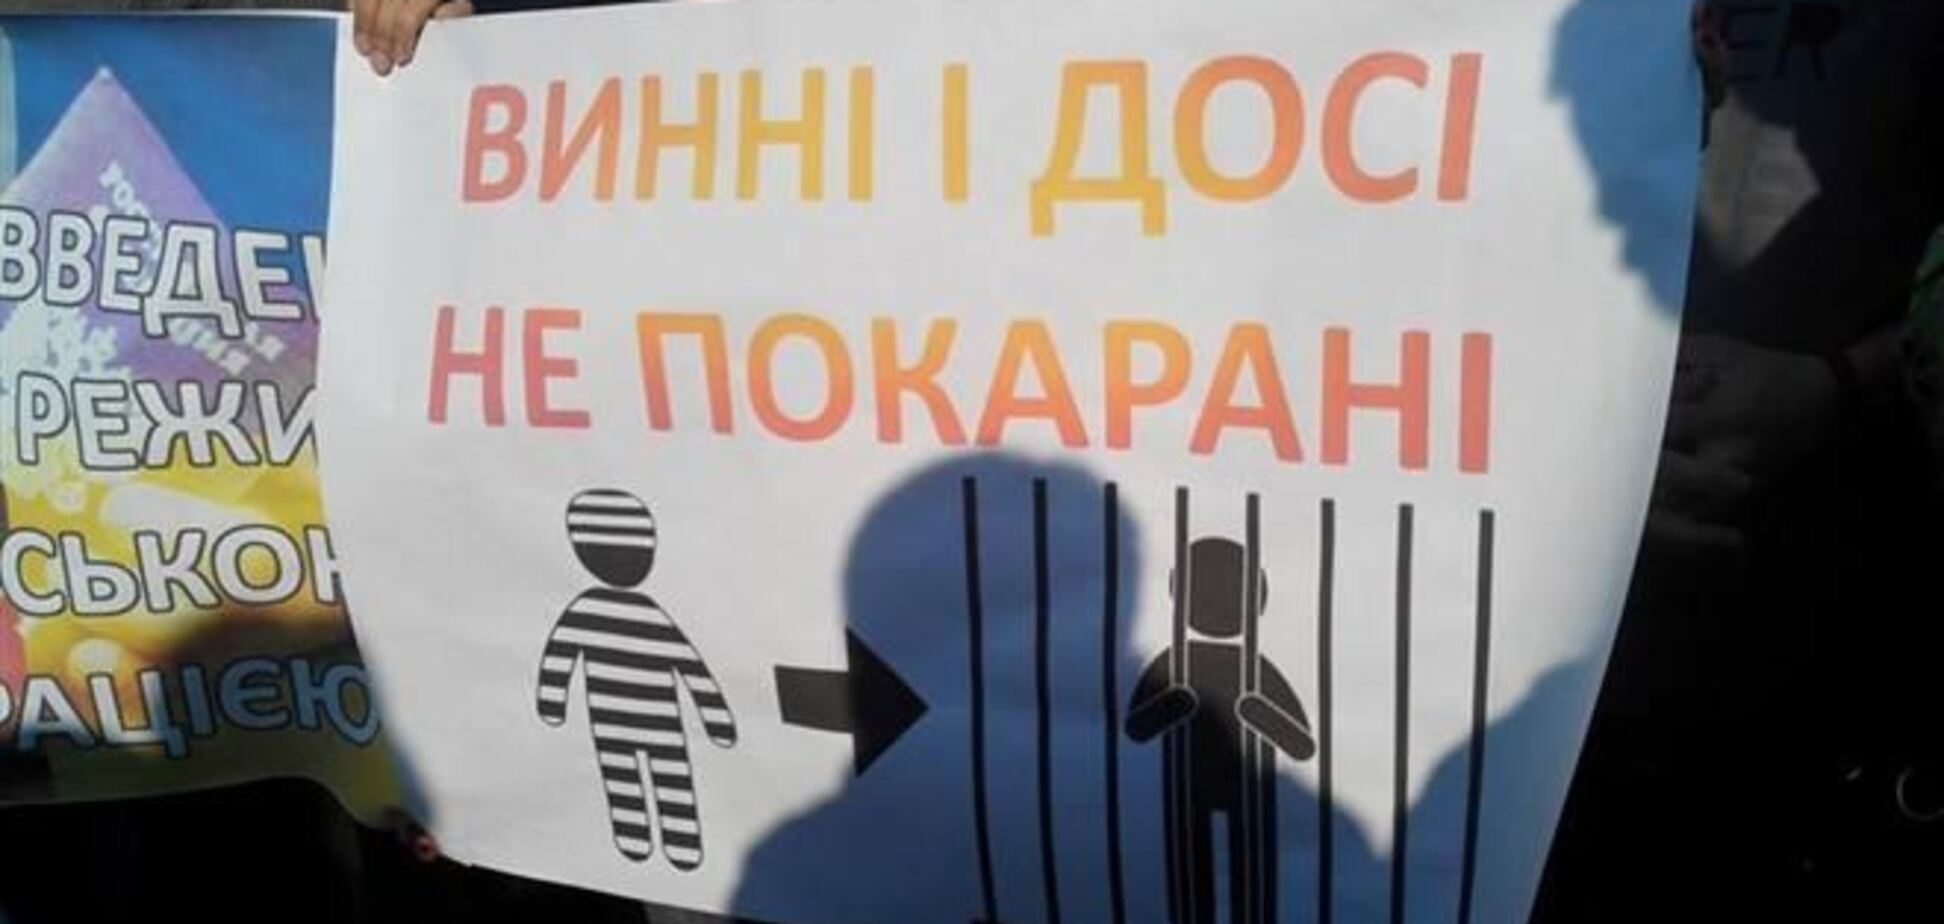 Активисты пикетировали имение Яценюка